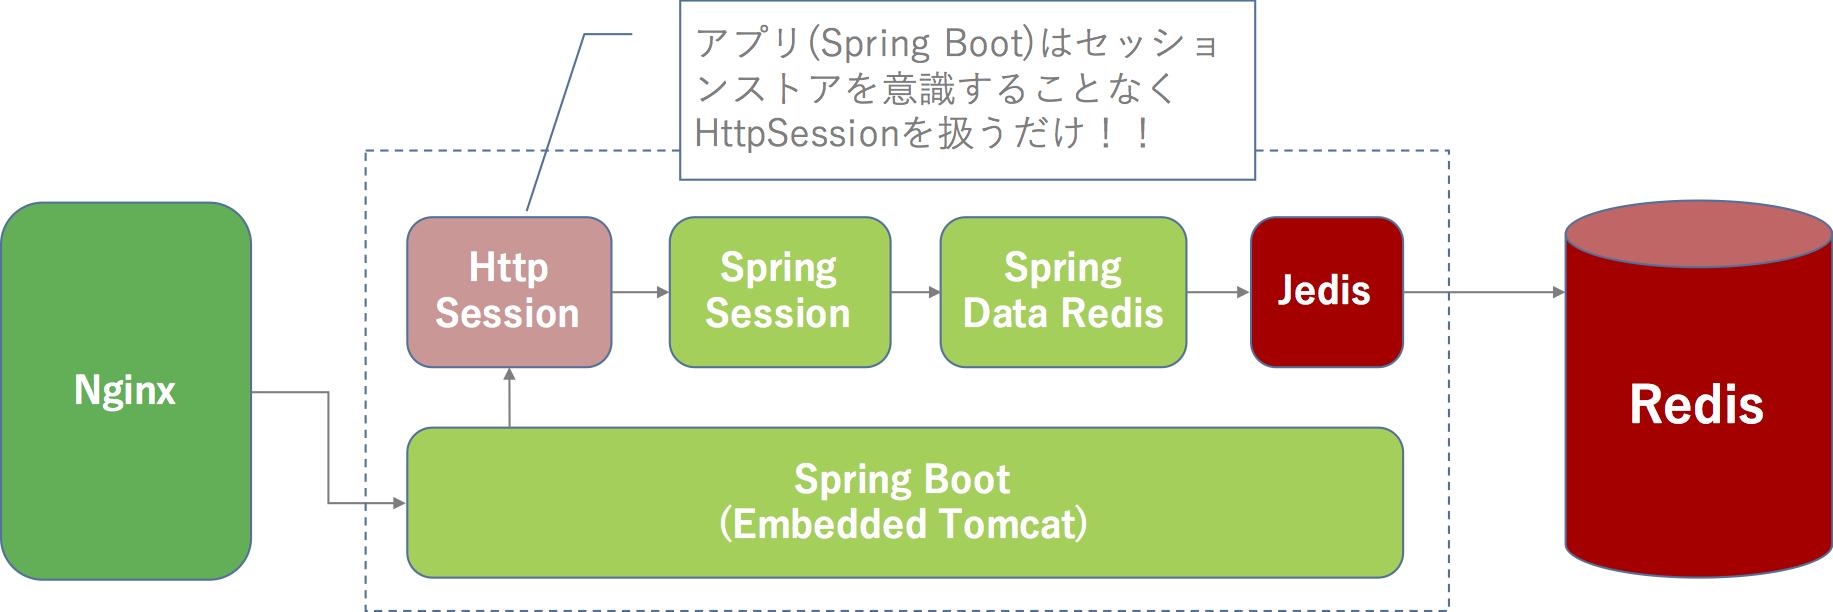 Java Redis. Изображение Spring Boot. Spring Boot схема работы. Redis для сессий.